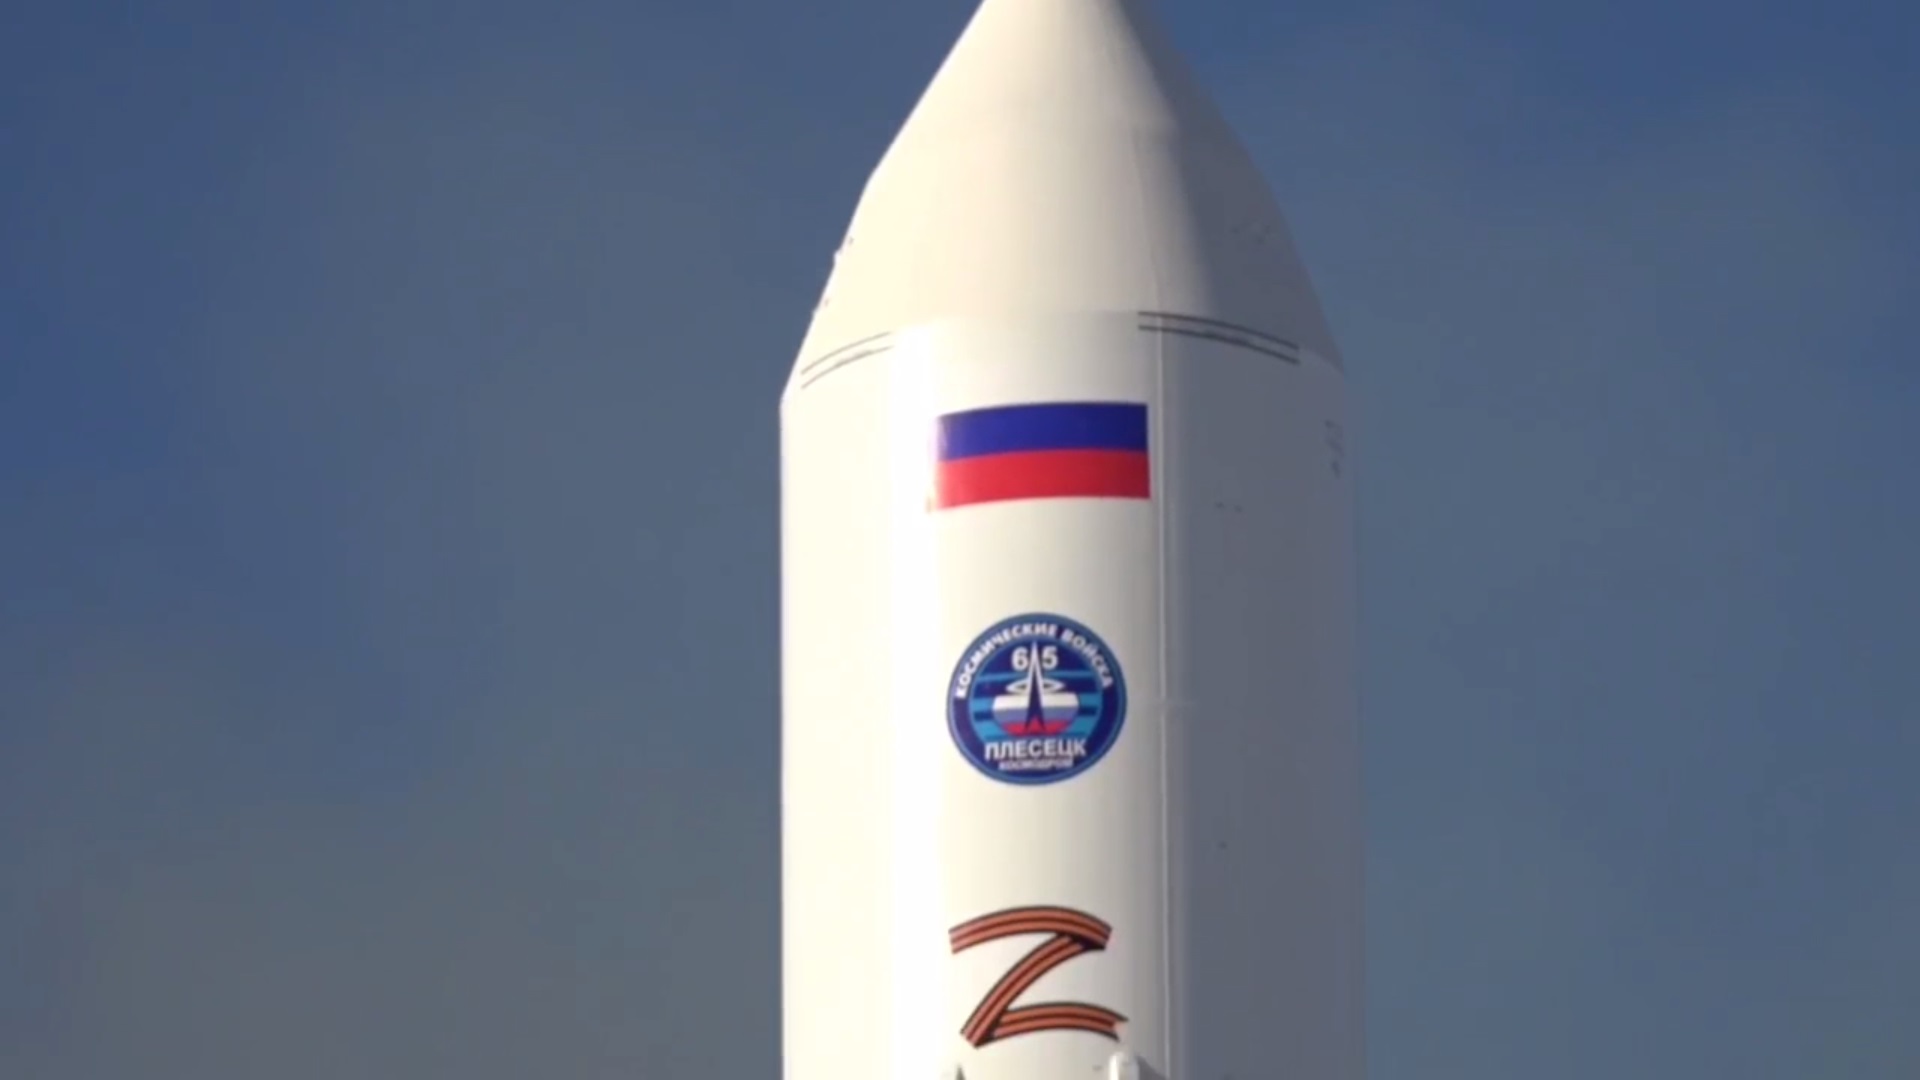 C Плесецка стартовала ракета-носитель с буквой Z